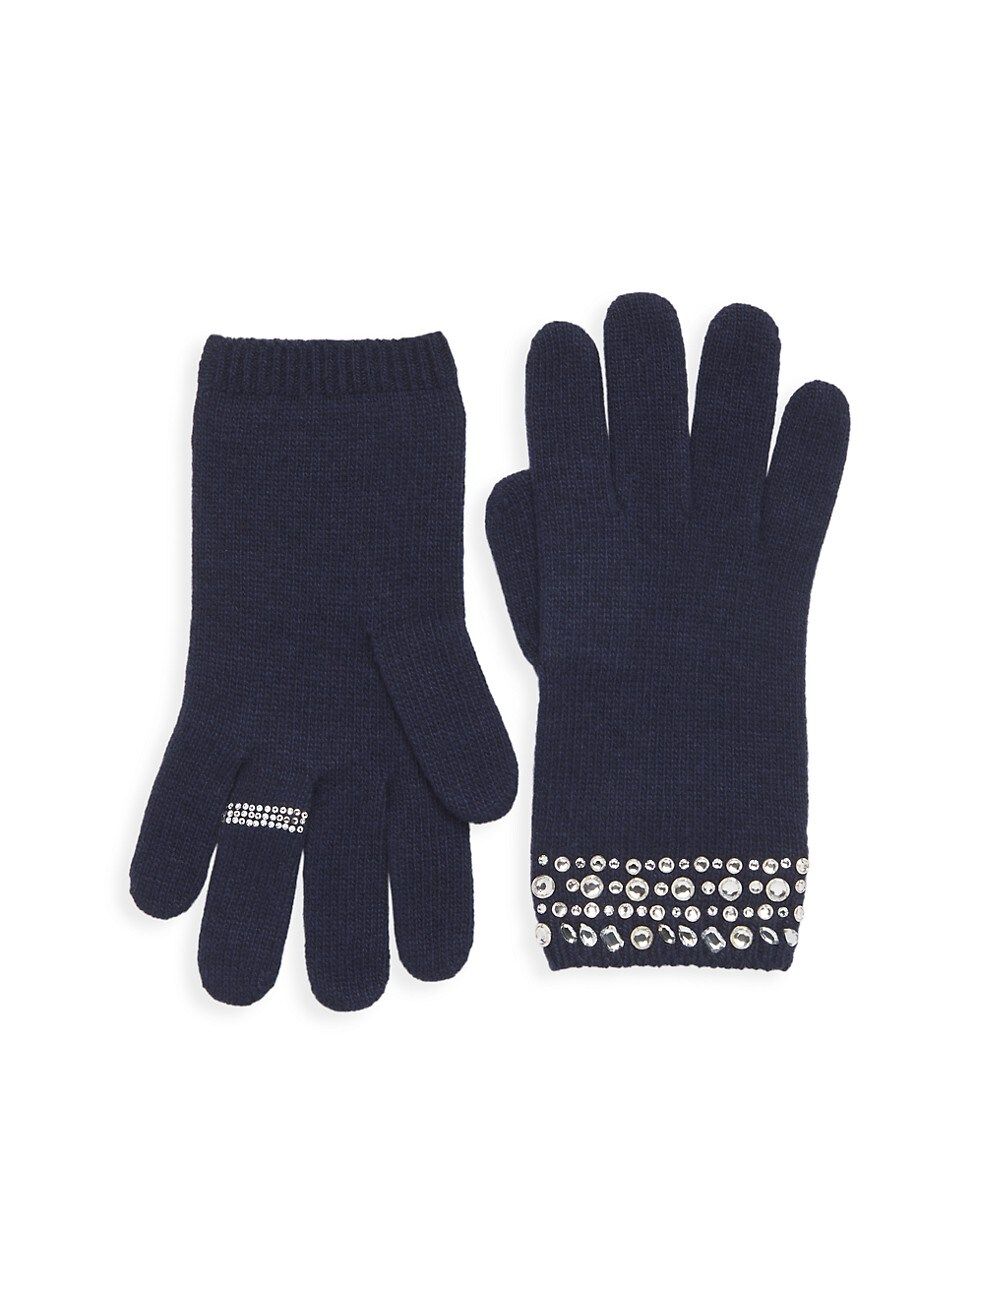 Carolyn Rowan x Stephanie Gottlieb Crystal-Embellished Gloves | Saks Fifth Avenue